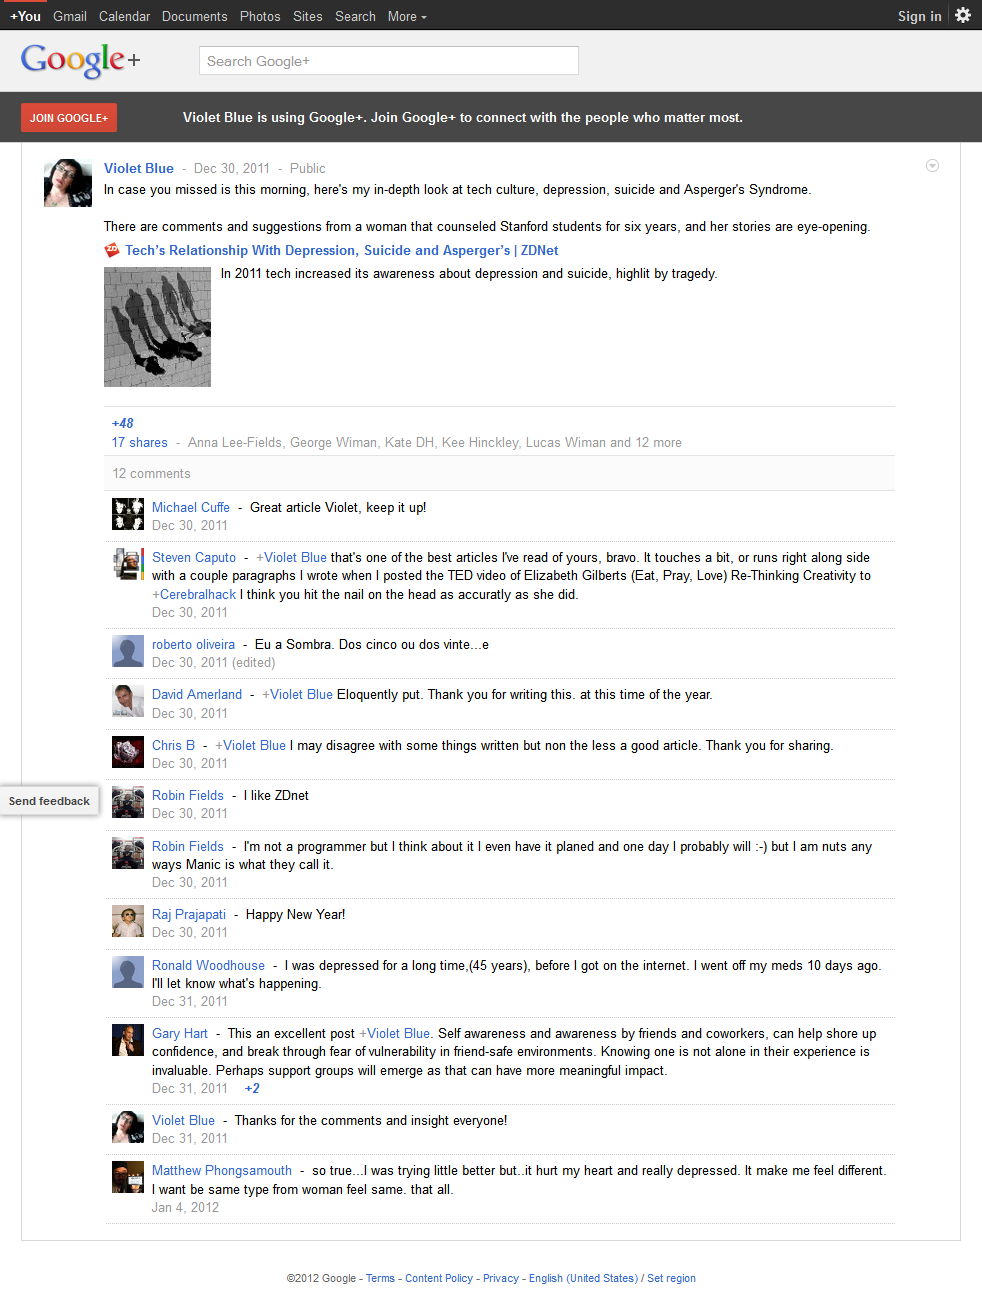 Violet Blue suicide censorship post screenshot 2012-01-12